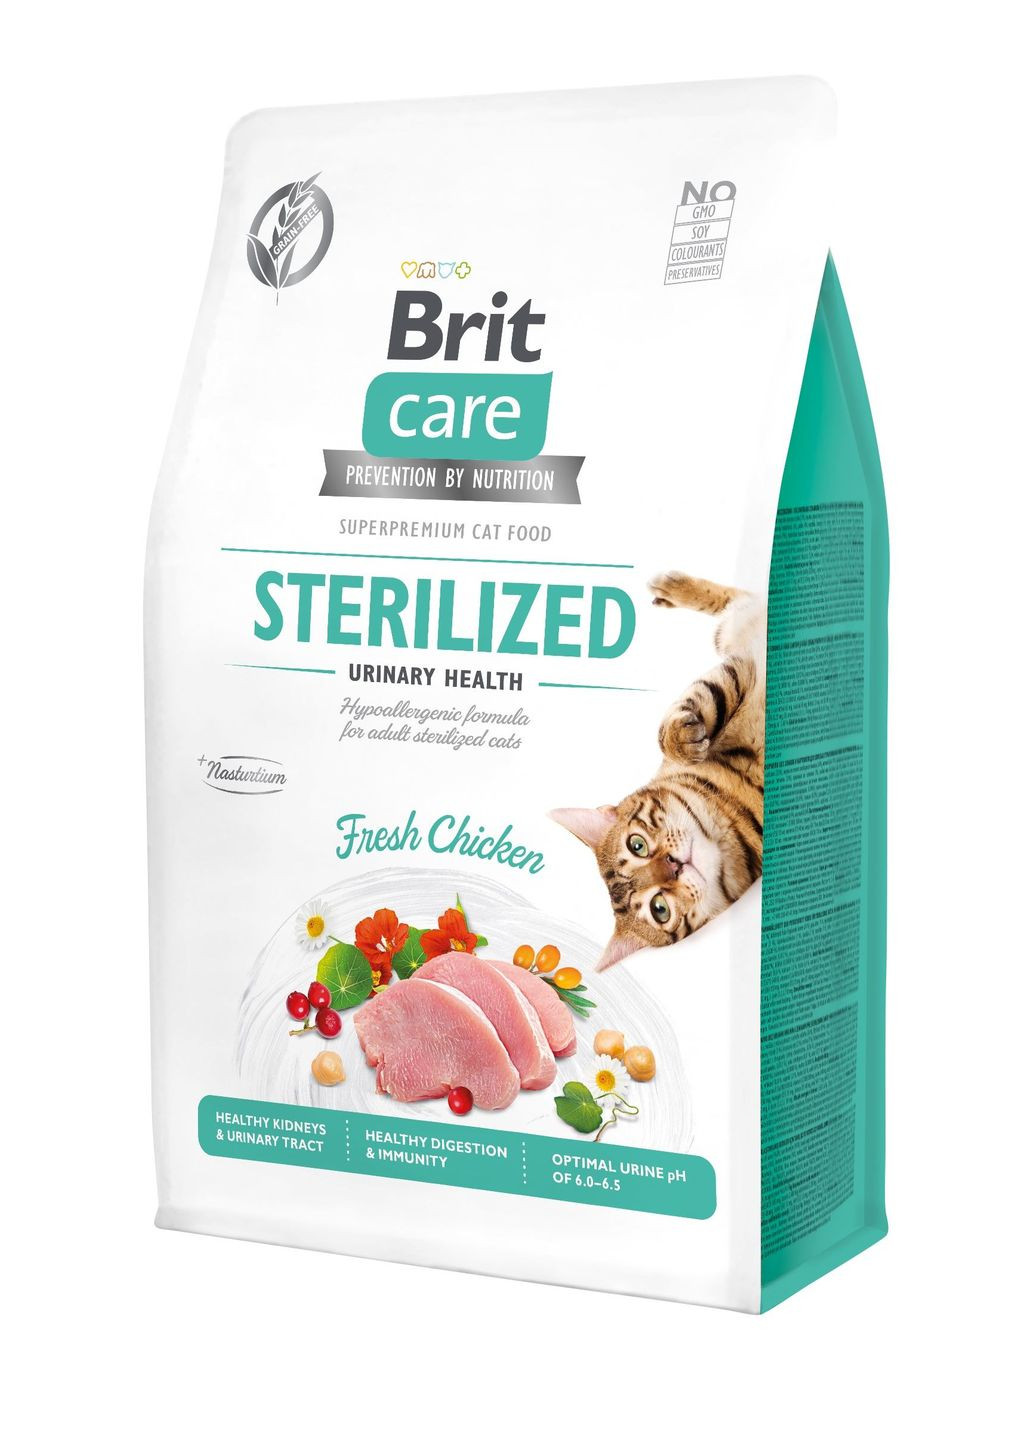 Сухой корм для стерилизованных котов Cat GF Sterilized Urinary Health с курицей 0.4 кг (8595602540747) Brit Care (279564339)